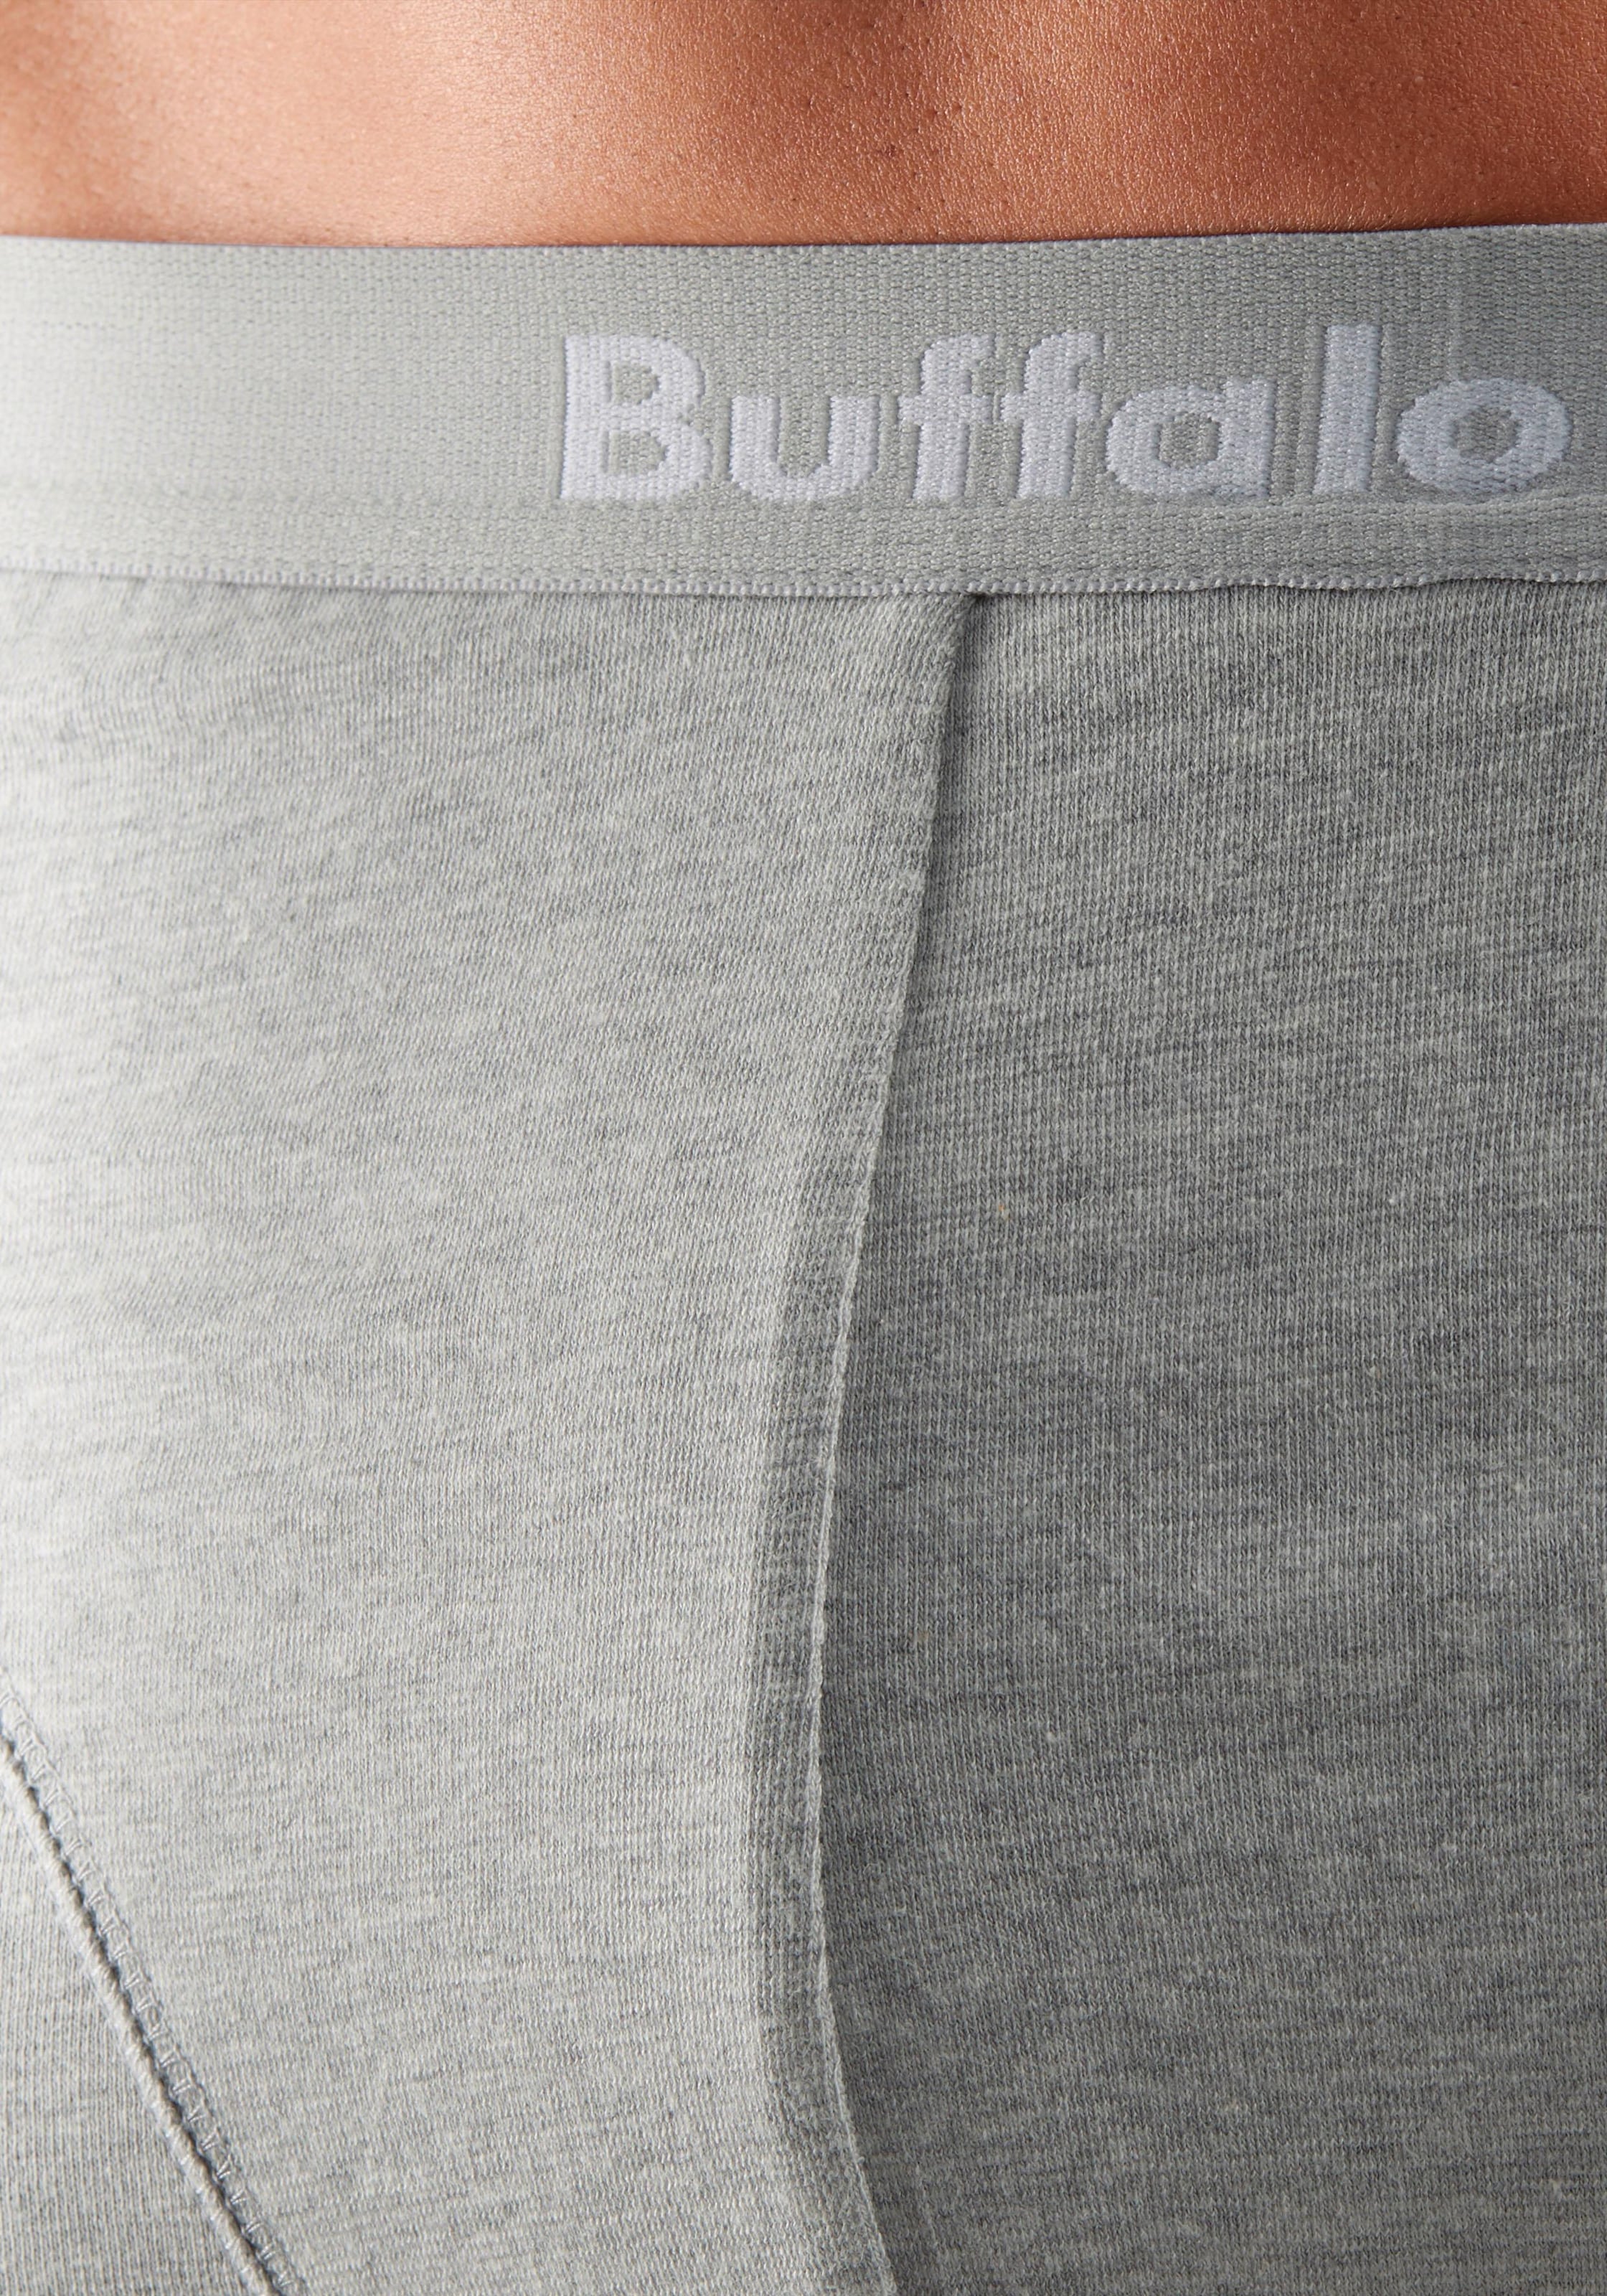 Buffalo Boxer, (Packung, 3 St.), mit Overlock-Nähten vorn